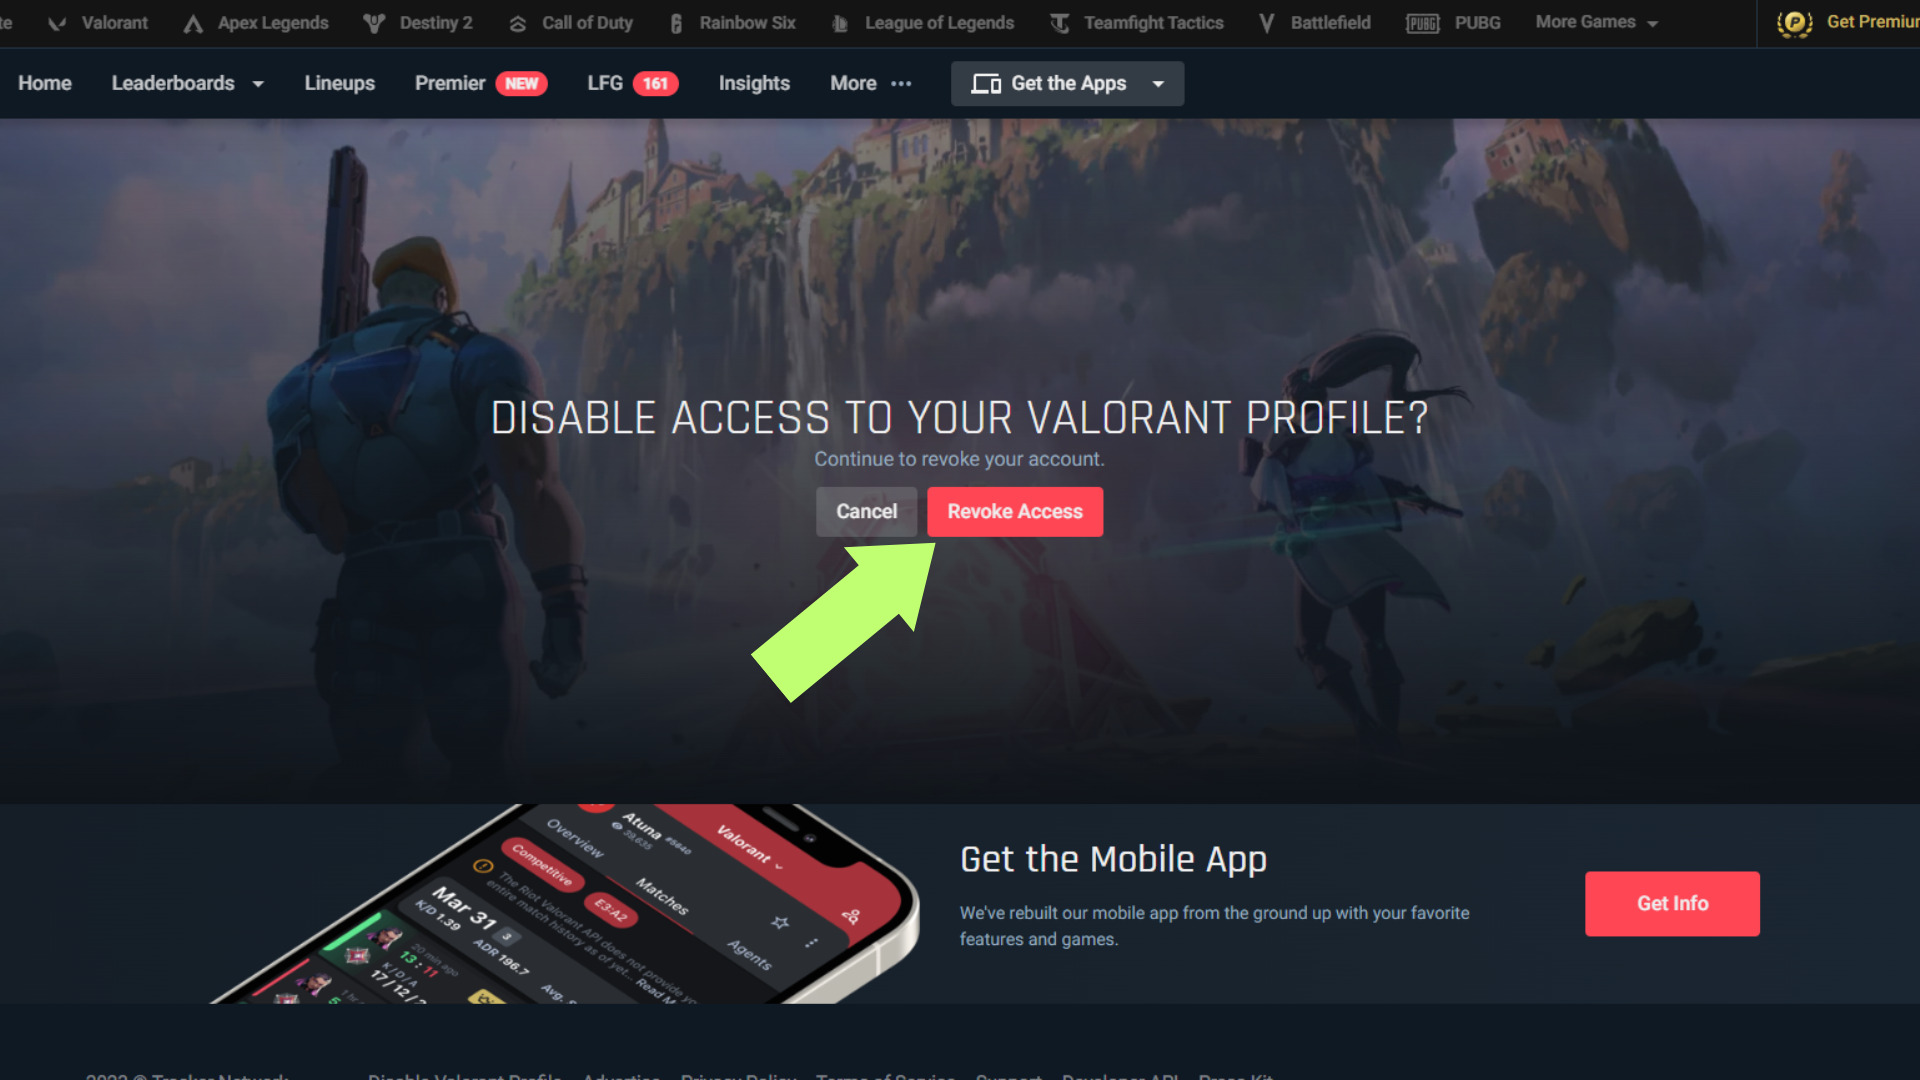 Click "Revoke Access" to make your Valorant profile private again. 